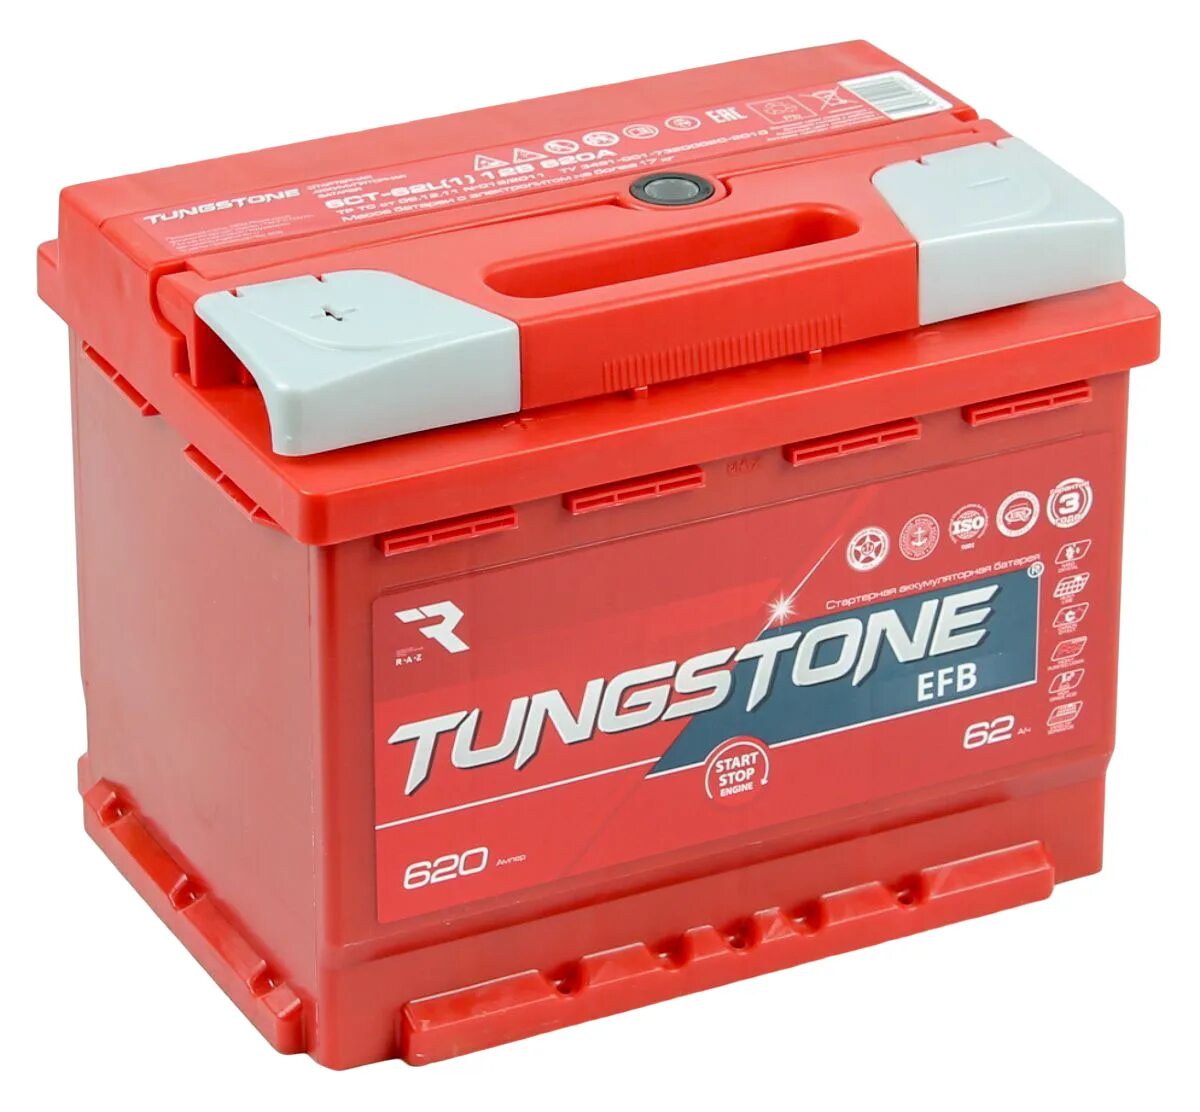 Аккумуляторы автомобильные отзывы цены. Tungstone EFB 6ст -77.0. Tungstone аккумуляторы 60 Ач. Tungstone EFB 6ст -62.0. EFB 6ct-60.0.